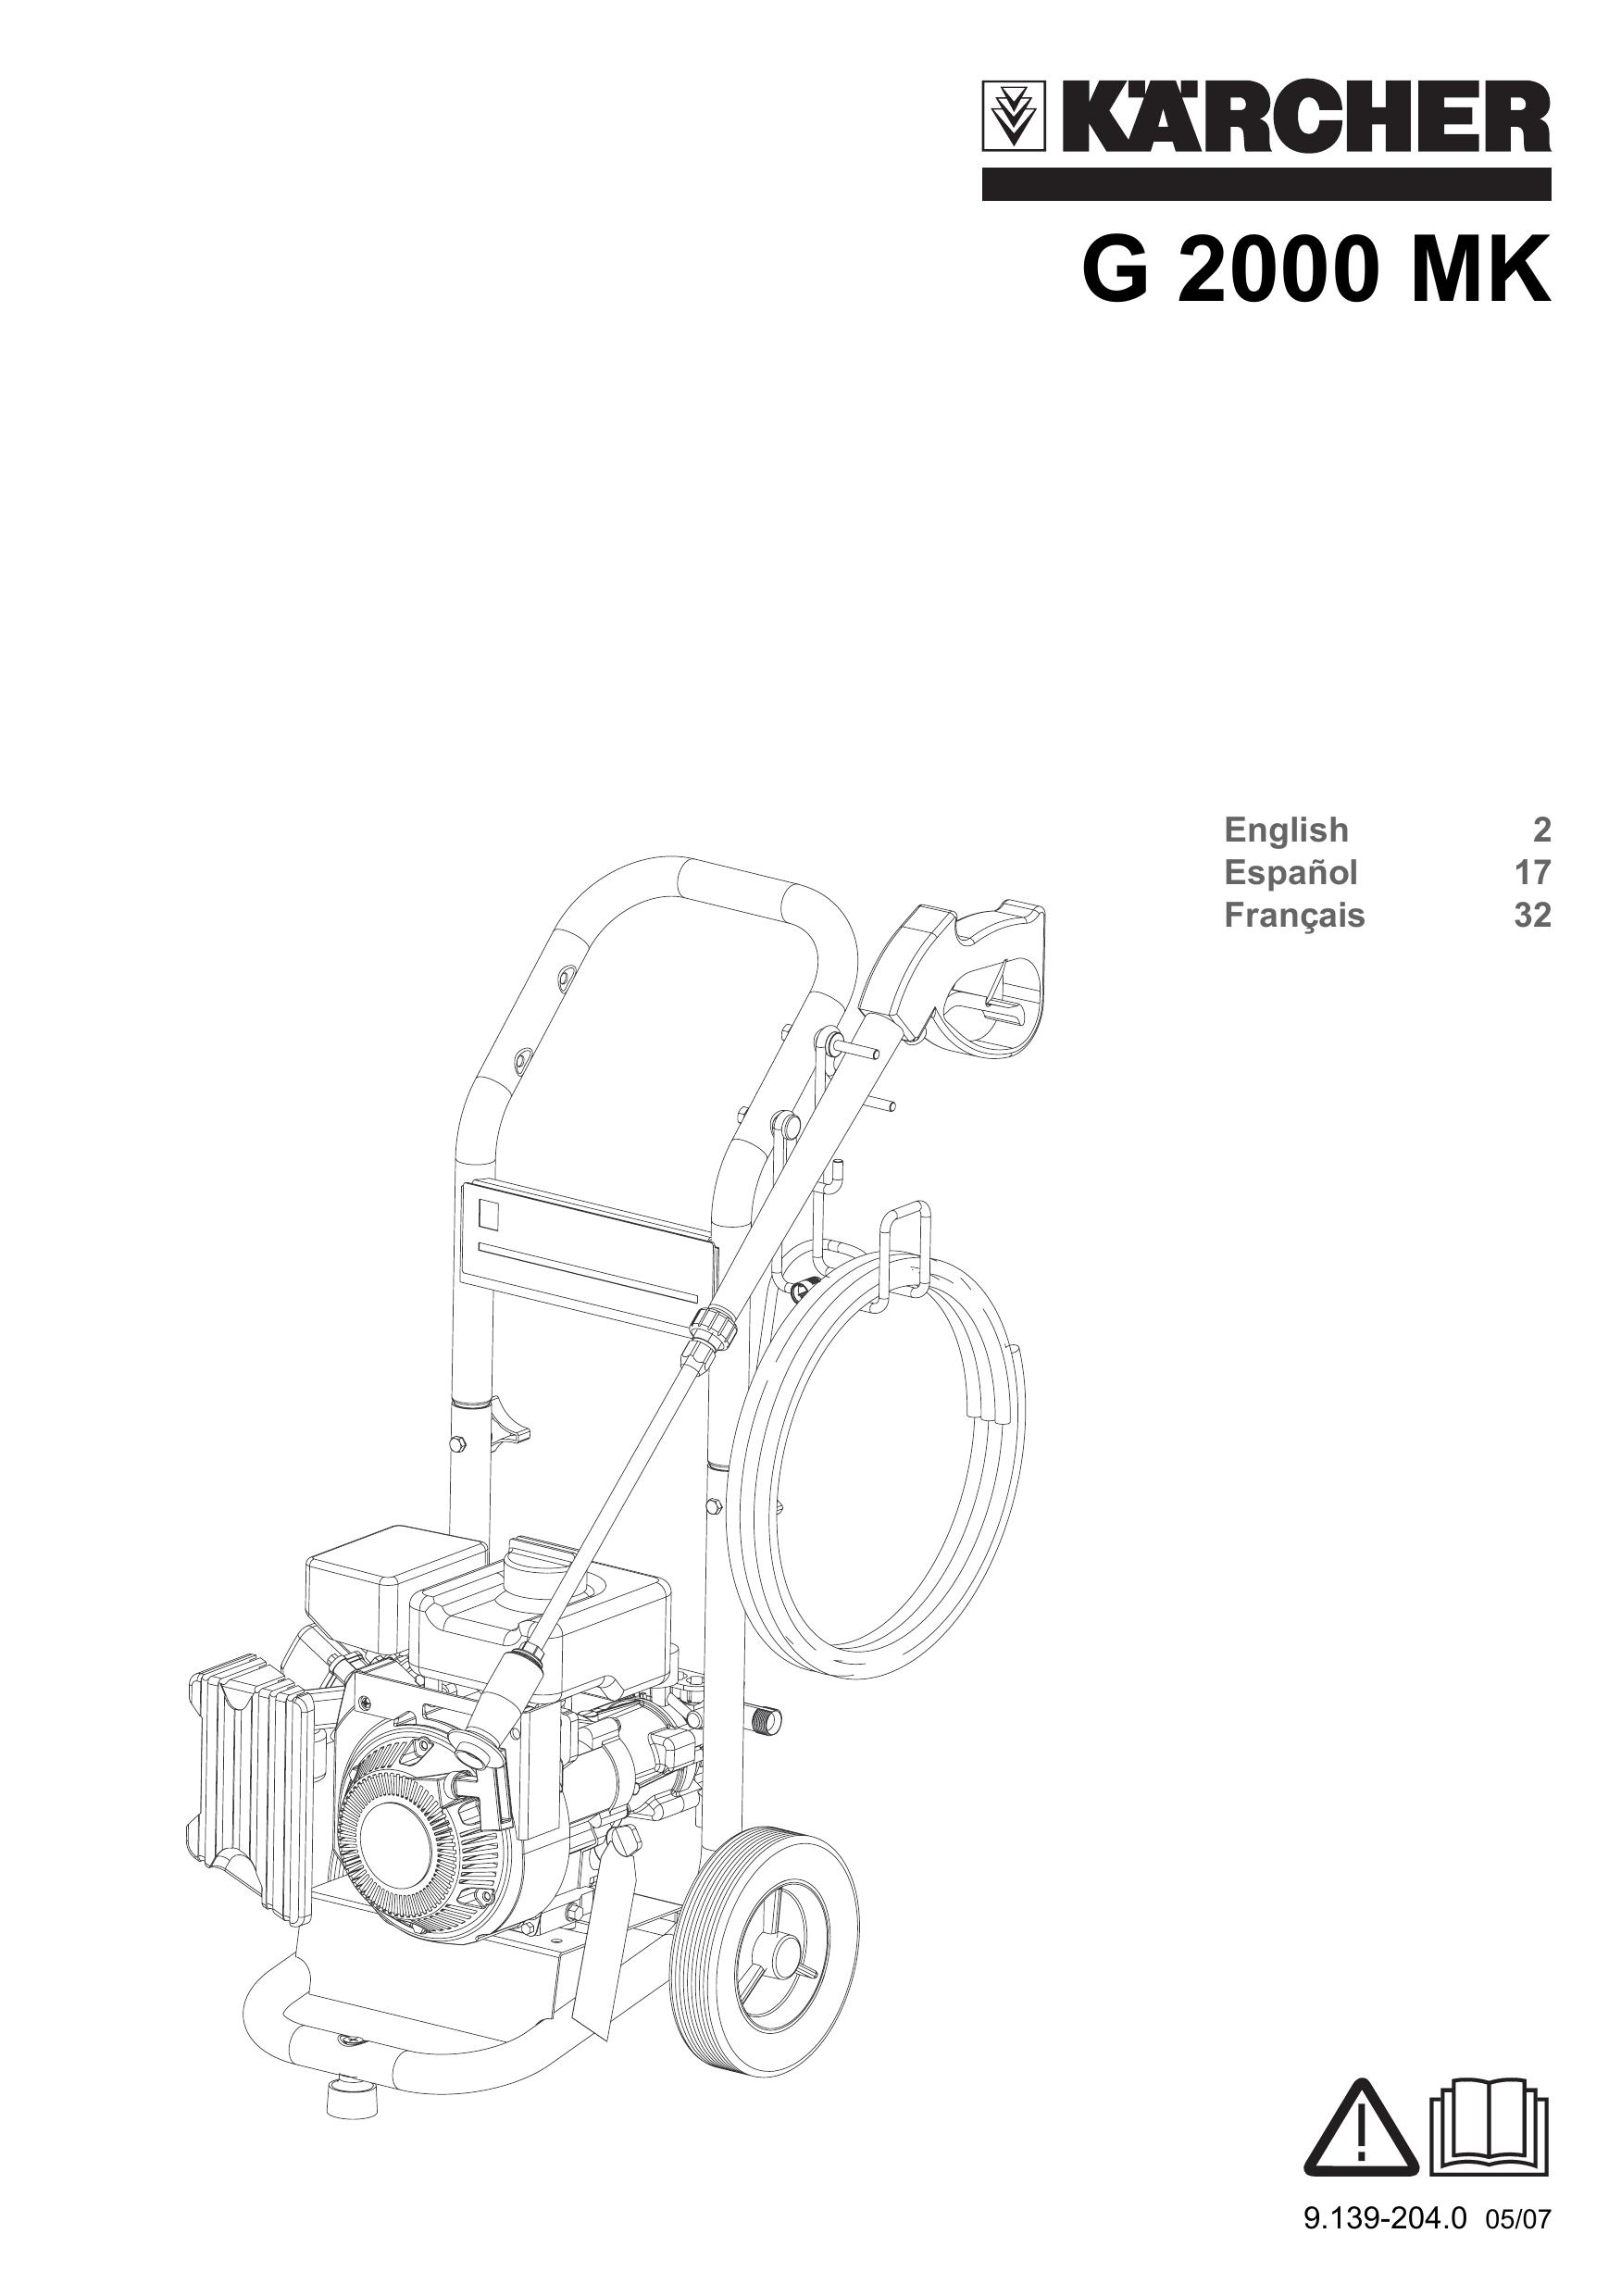 Karcher G 2000 MK Pressure Washer User Manual